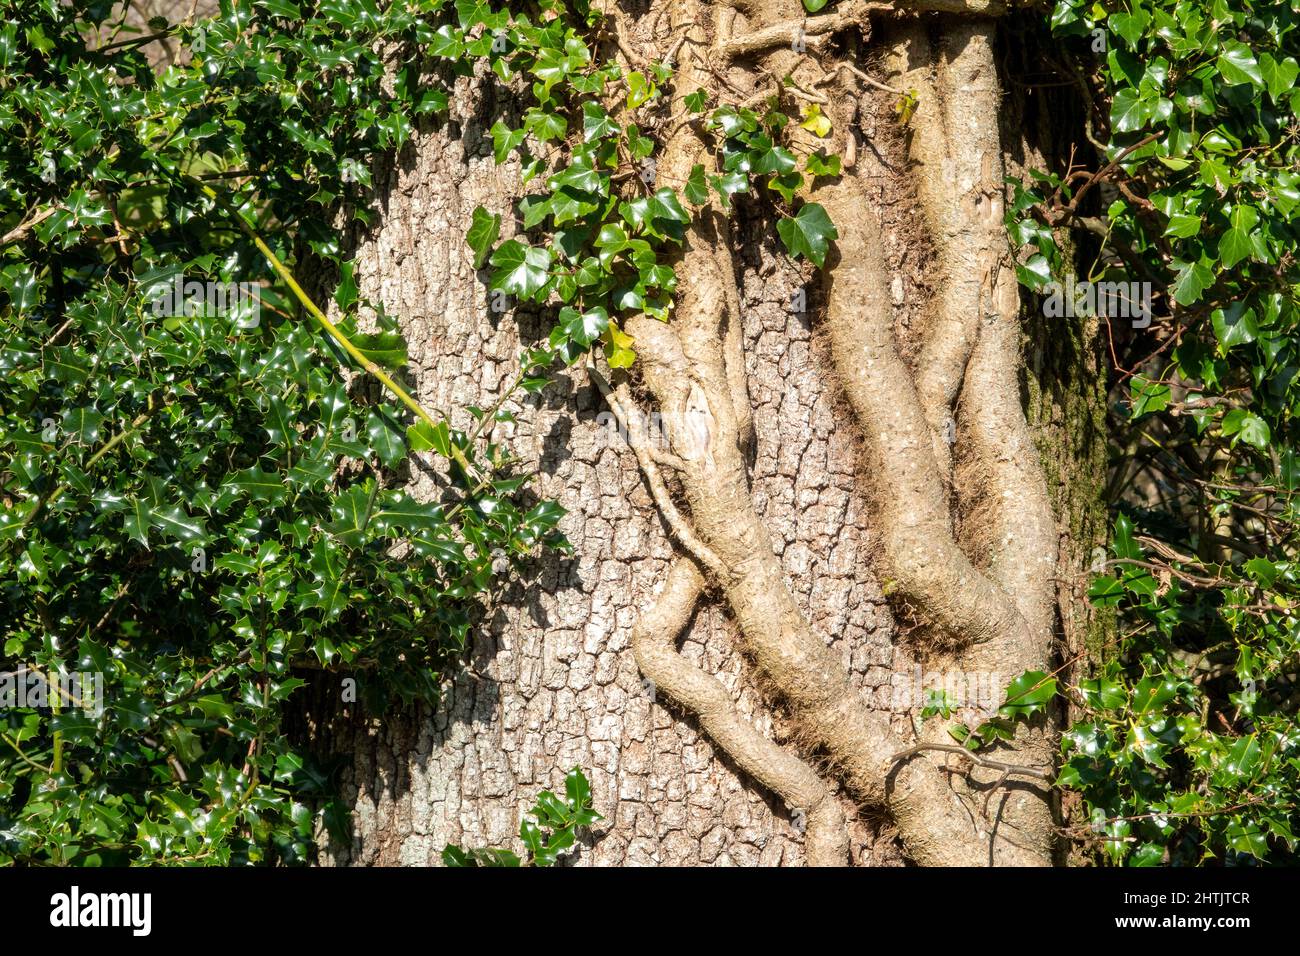 Détail d'une tige épaisse de lierre anglaise bien établie qui enveloppe un arbre, y compris le houx Banque D'Images